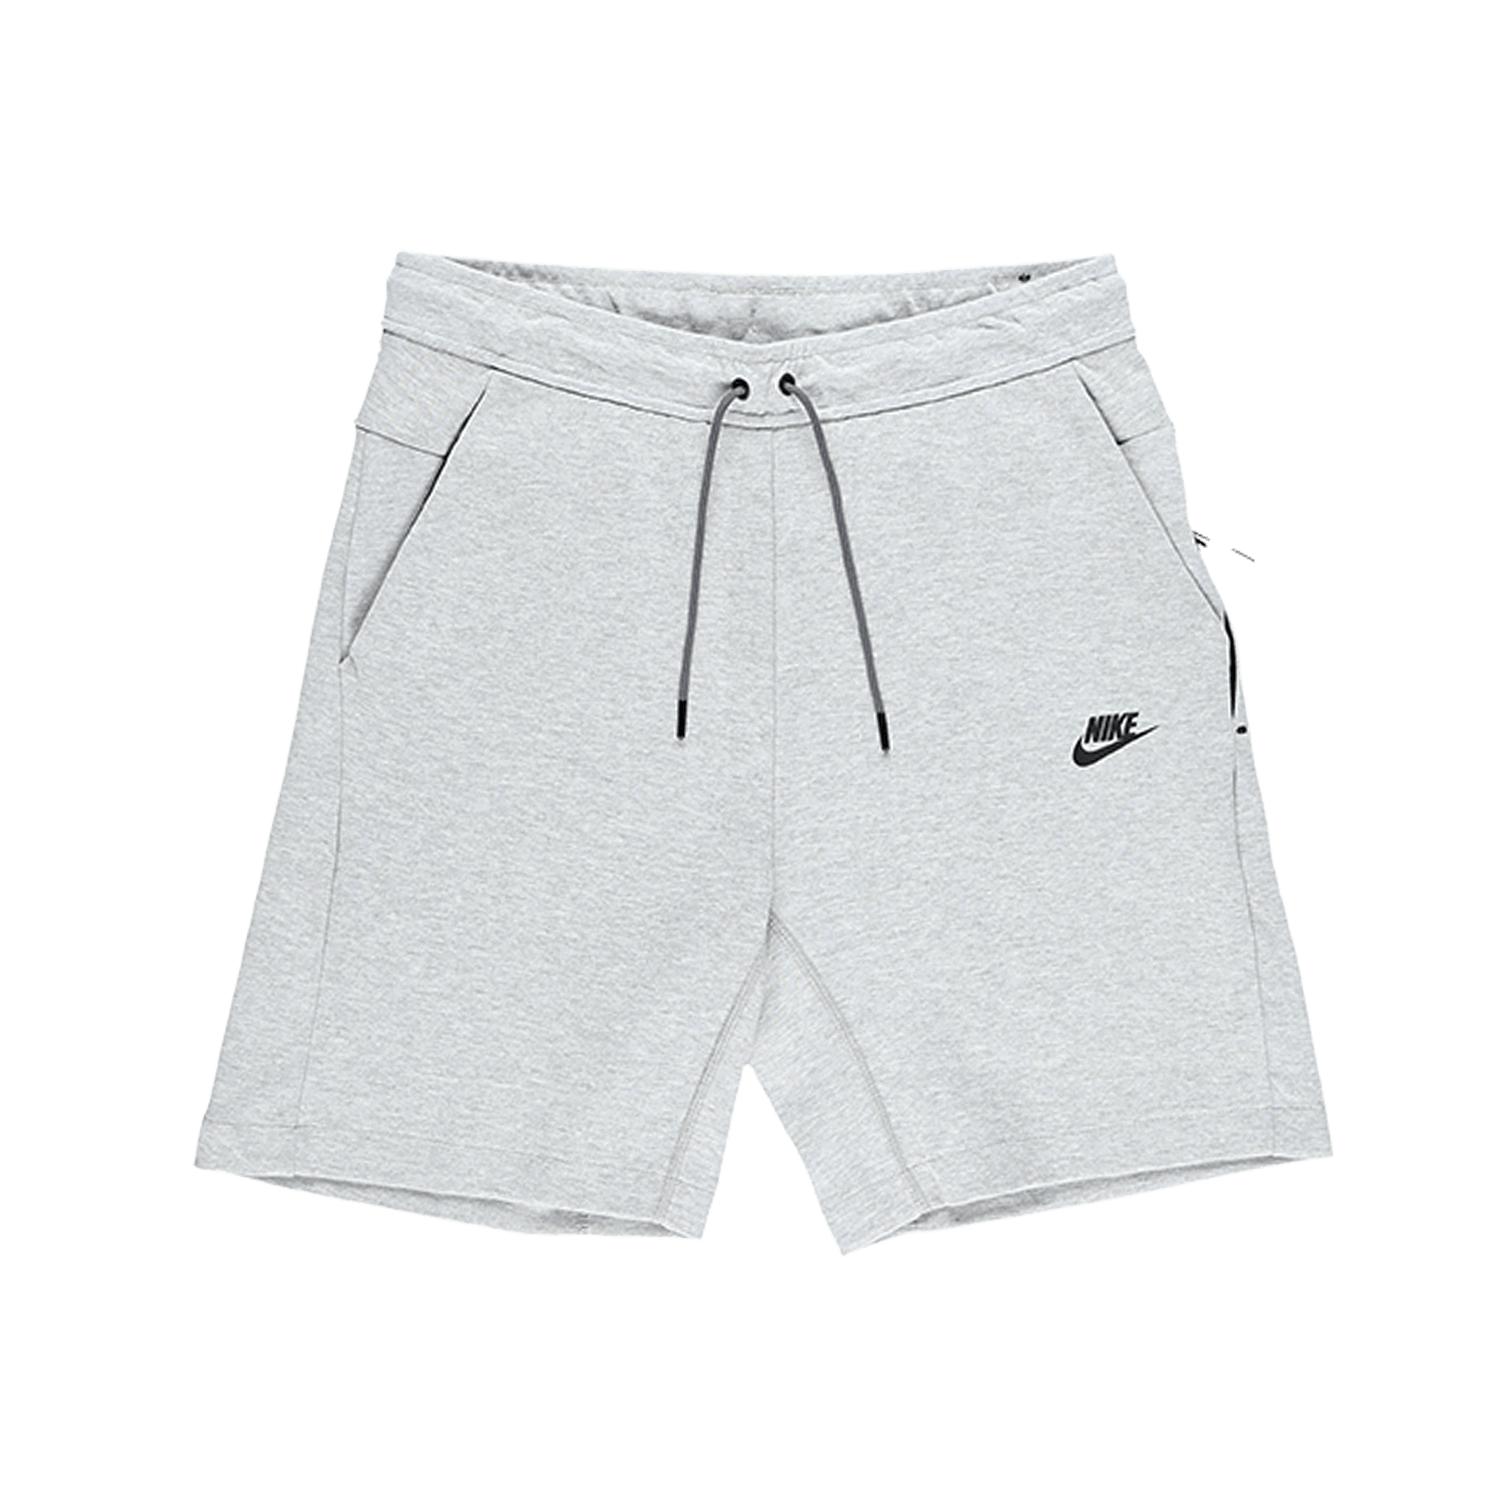 Nike Sportswear Tech Fleece Shorts in Grey (Gray) for Men - Save 40% - Lyst